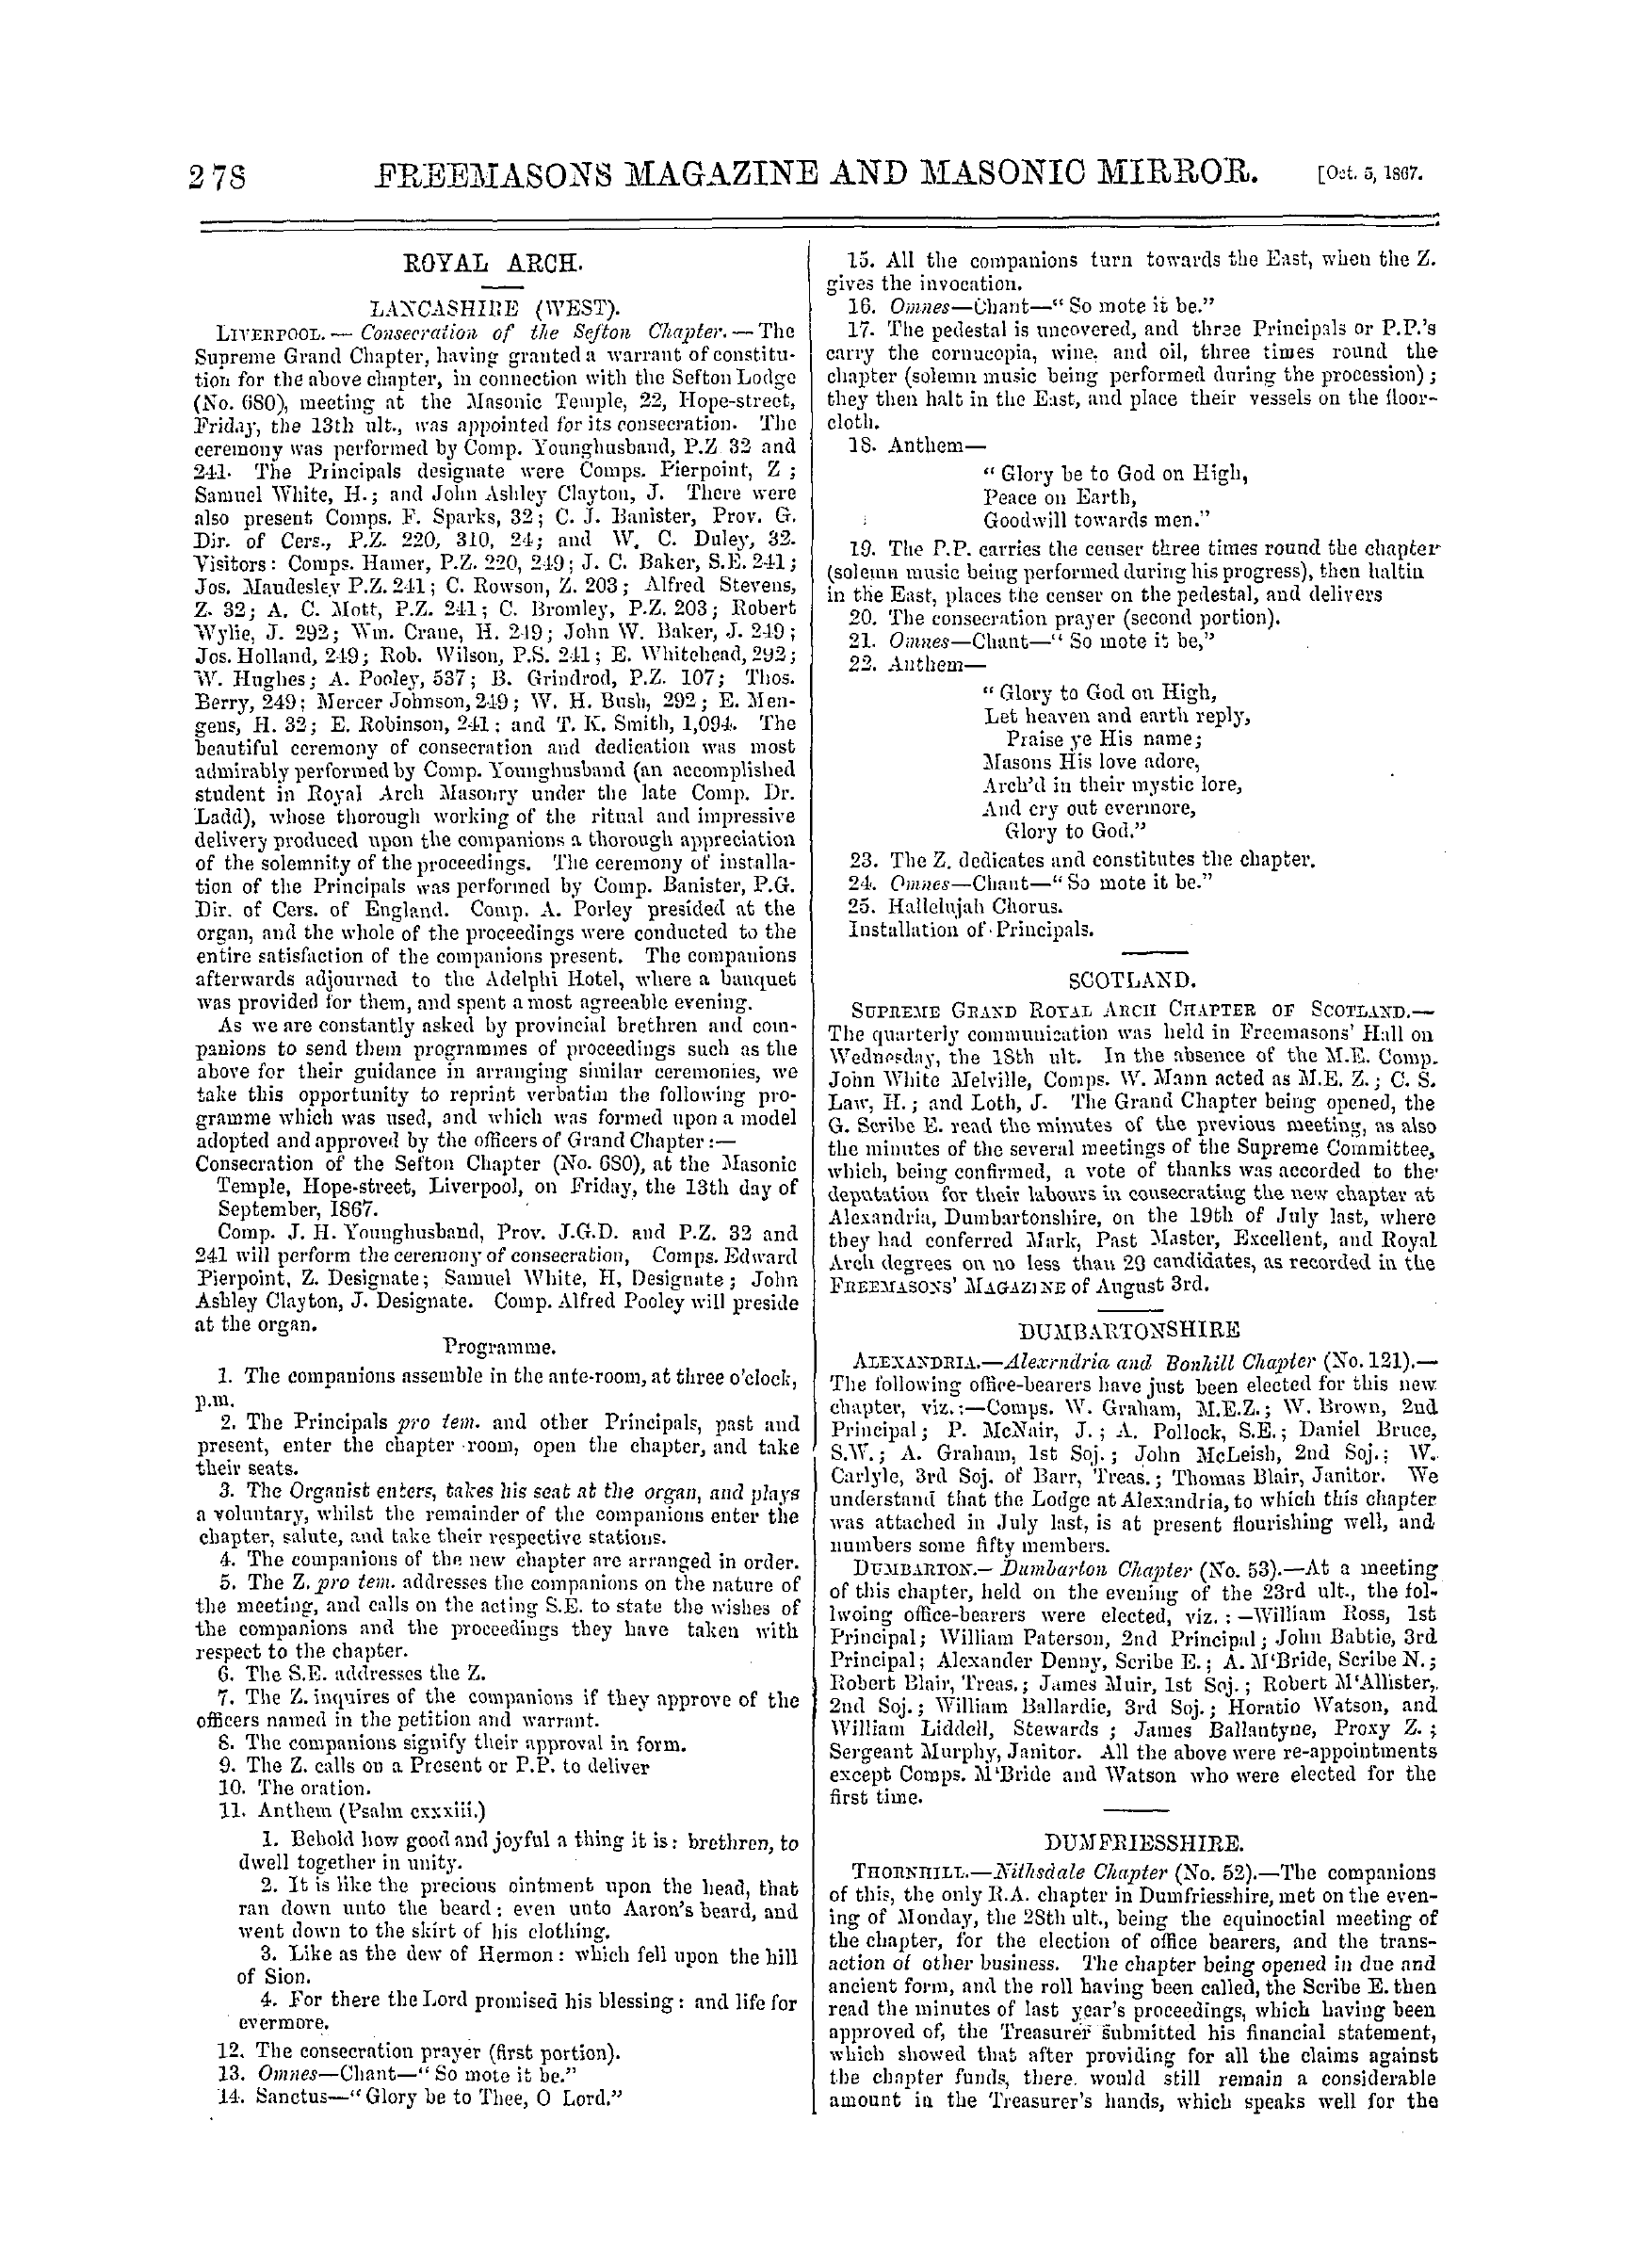 The Freemasons' Monthly Magazine: 1867-10-05: 18